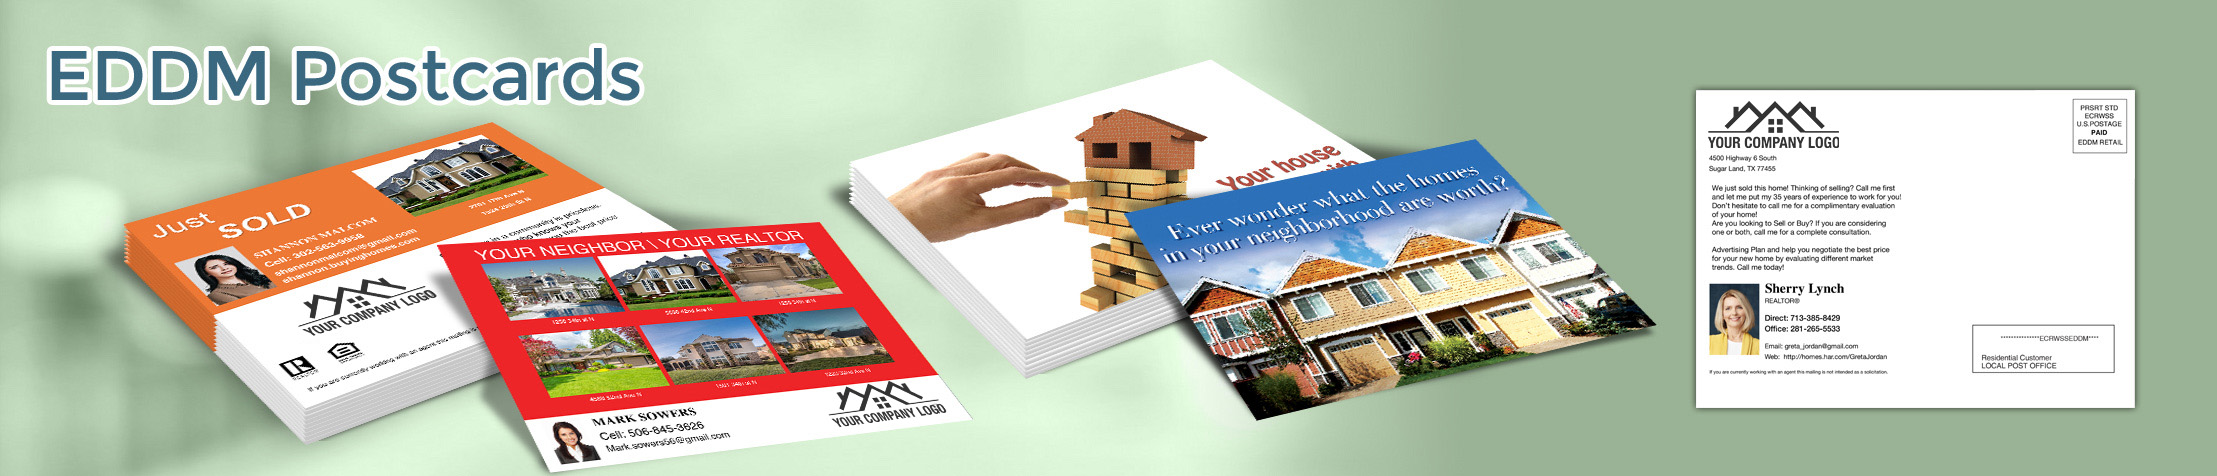 Independent Realtor Real Estate EDDM Postcards - personalized Every Door Direct Mail Postcards | BestPrintBuy.com